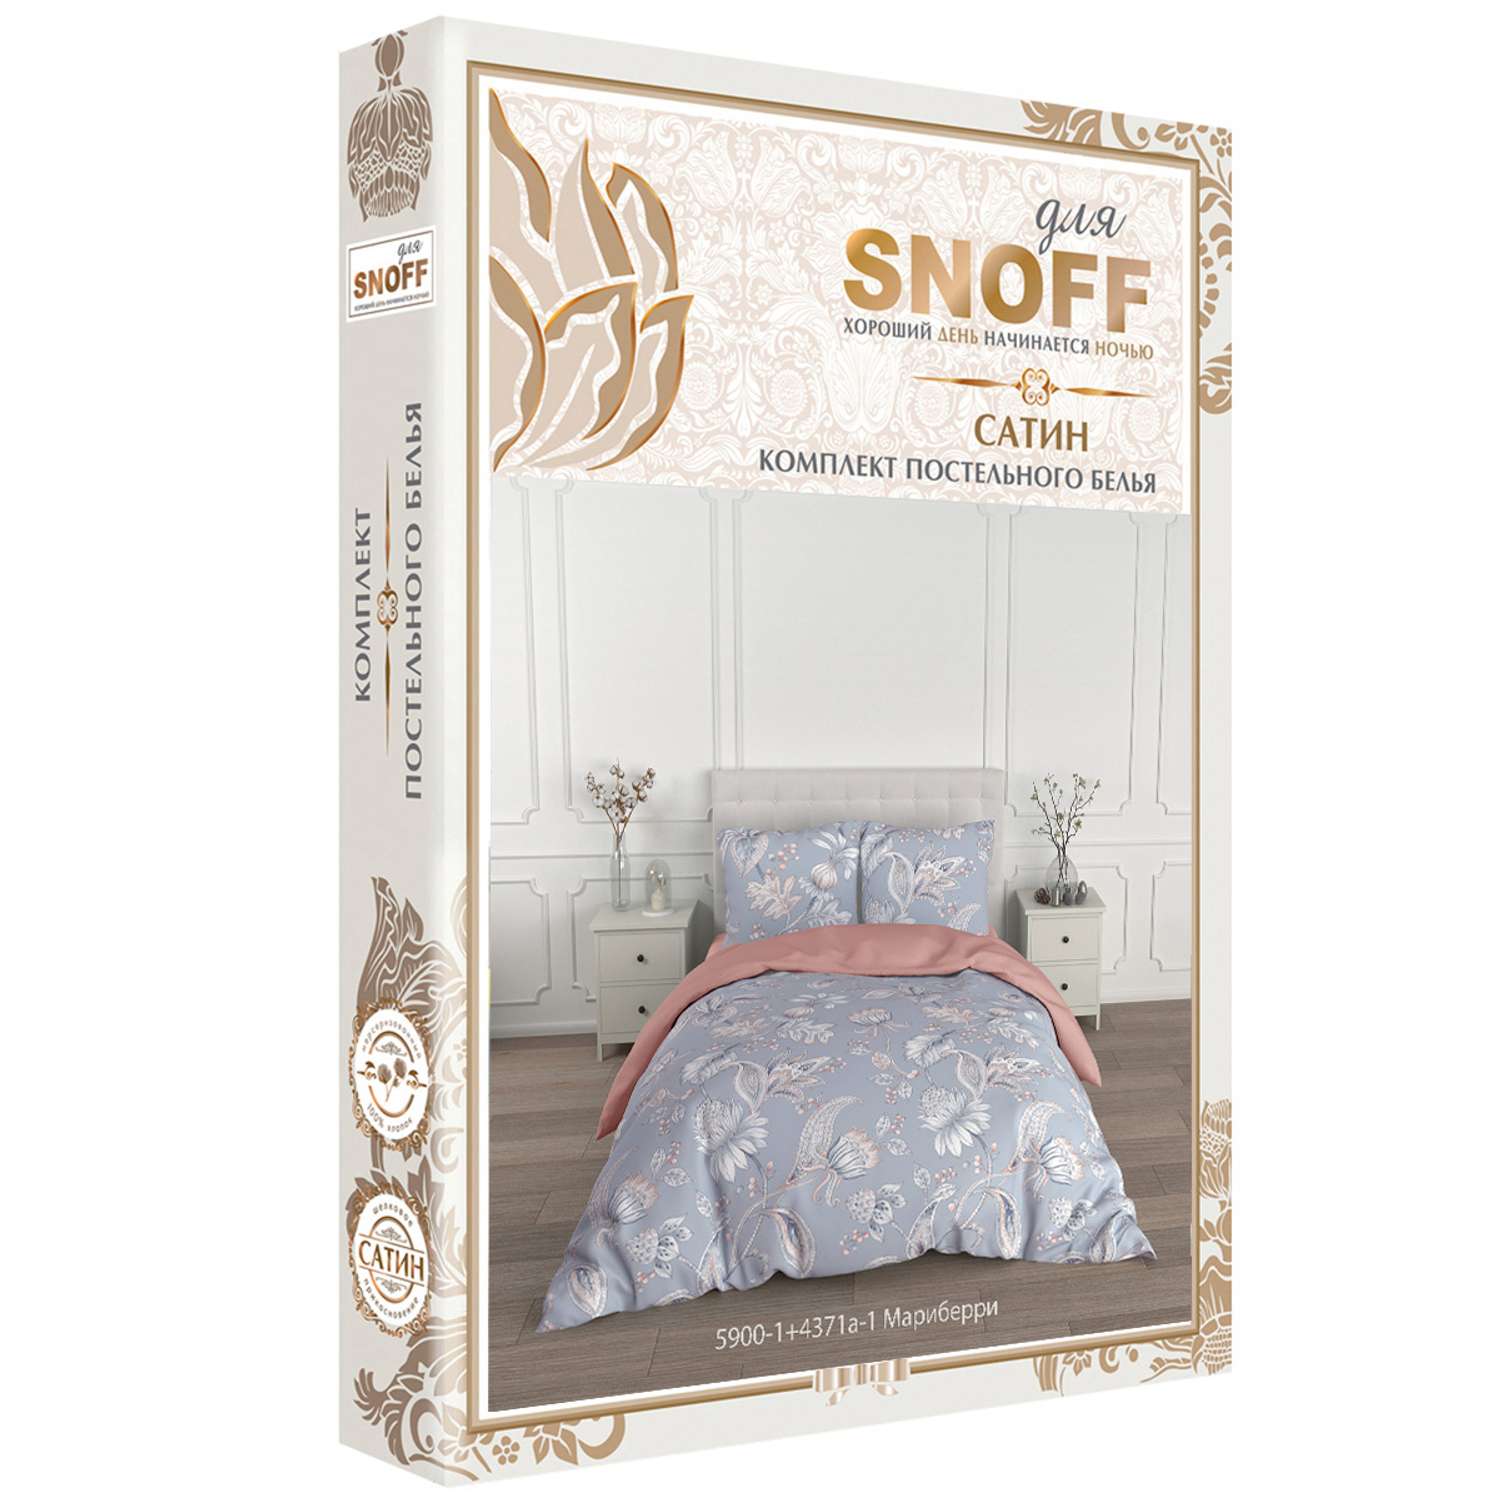 Комплект постельного белья для SNOFF Мариберри 2-спальный макси сатин - фото 6